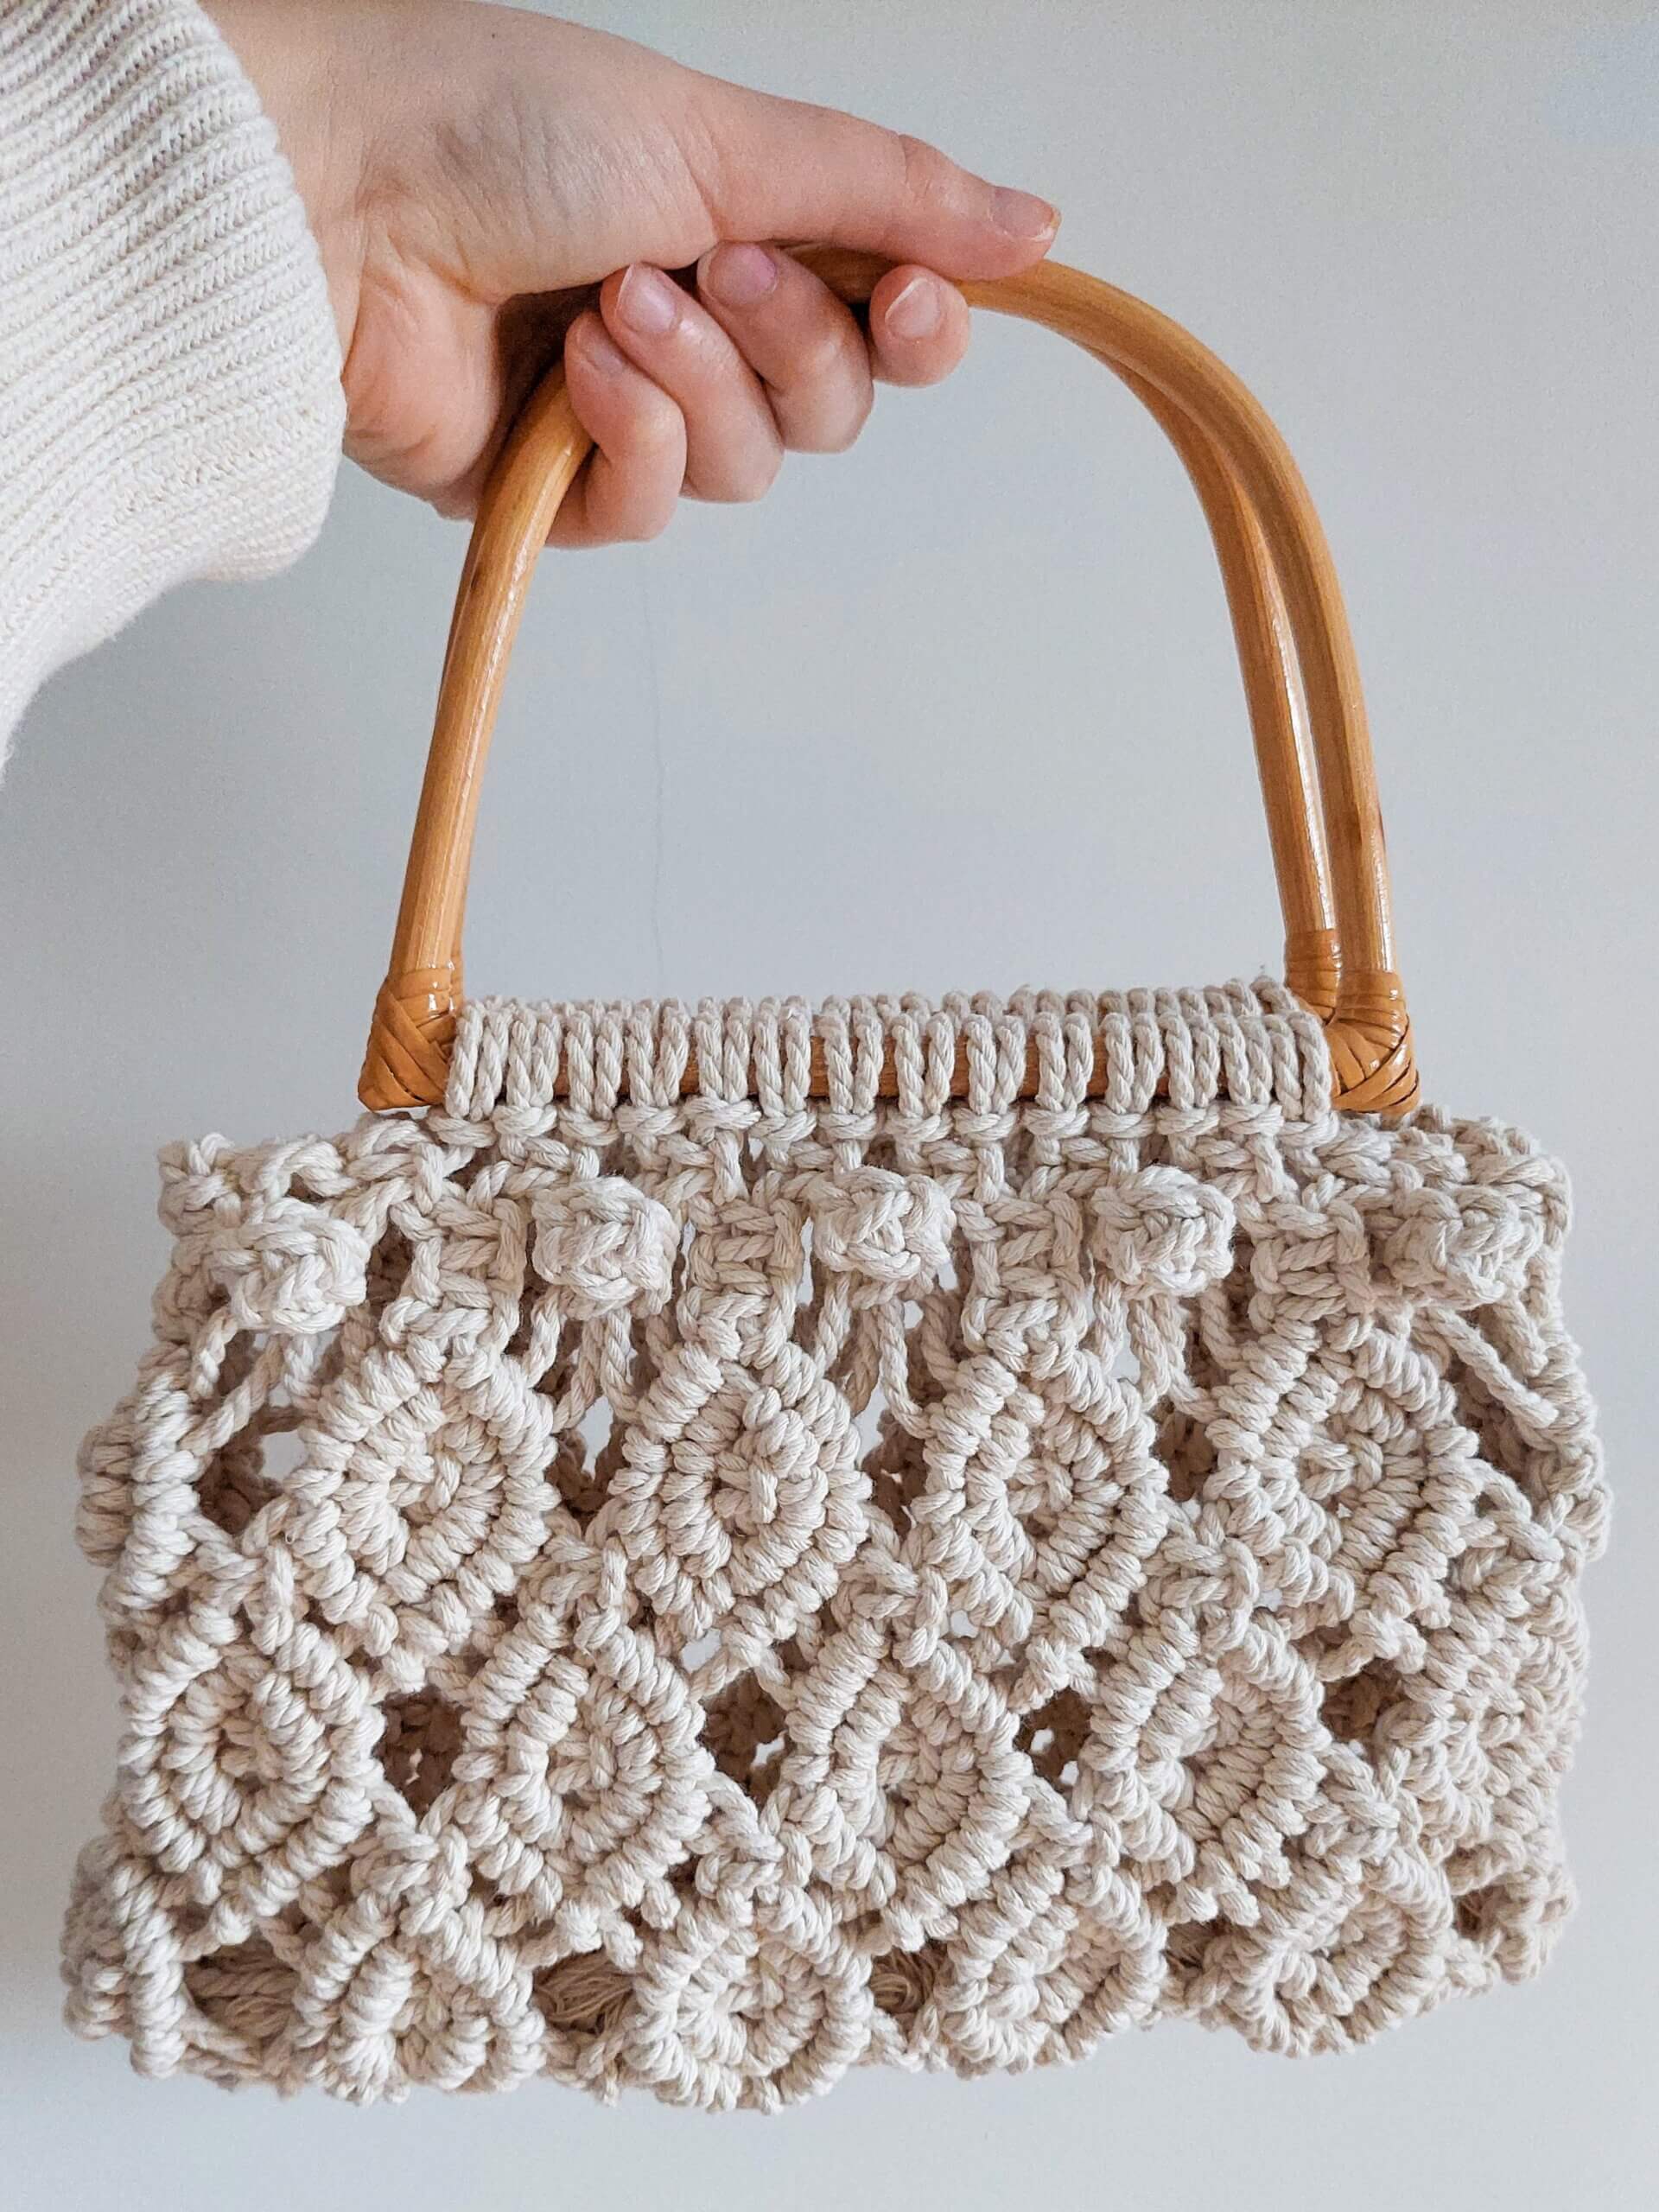 Macrame hand bag in white yarn